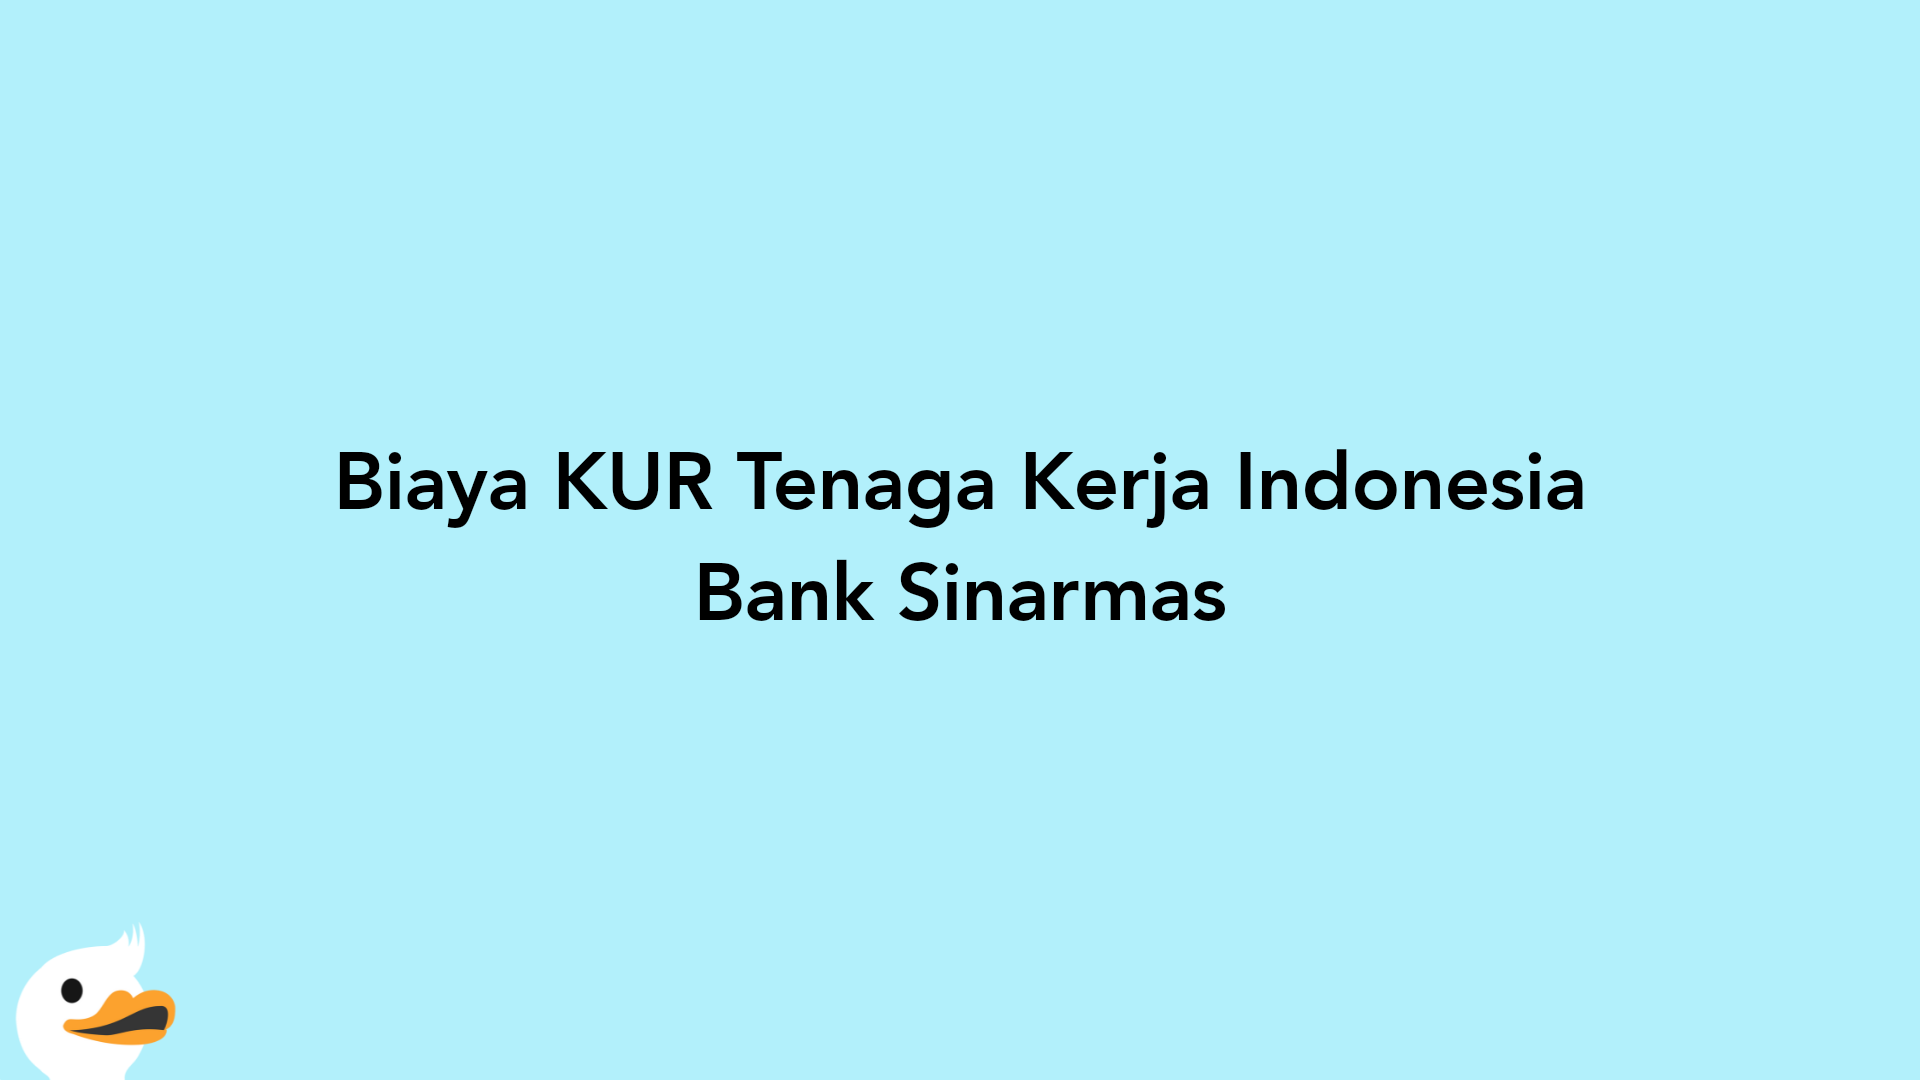 Biaya KUR Tenaga Kerja Indonesia Bank Sinarmas